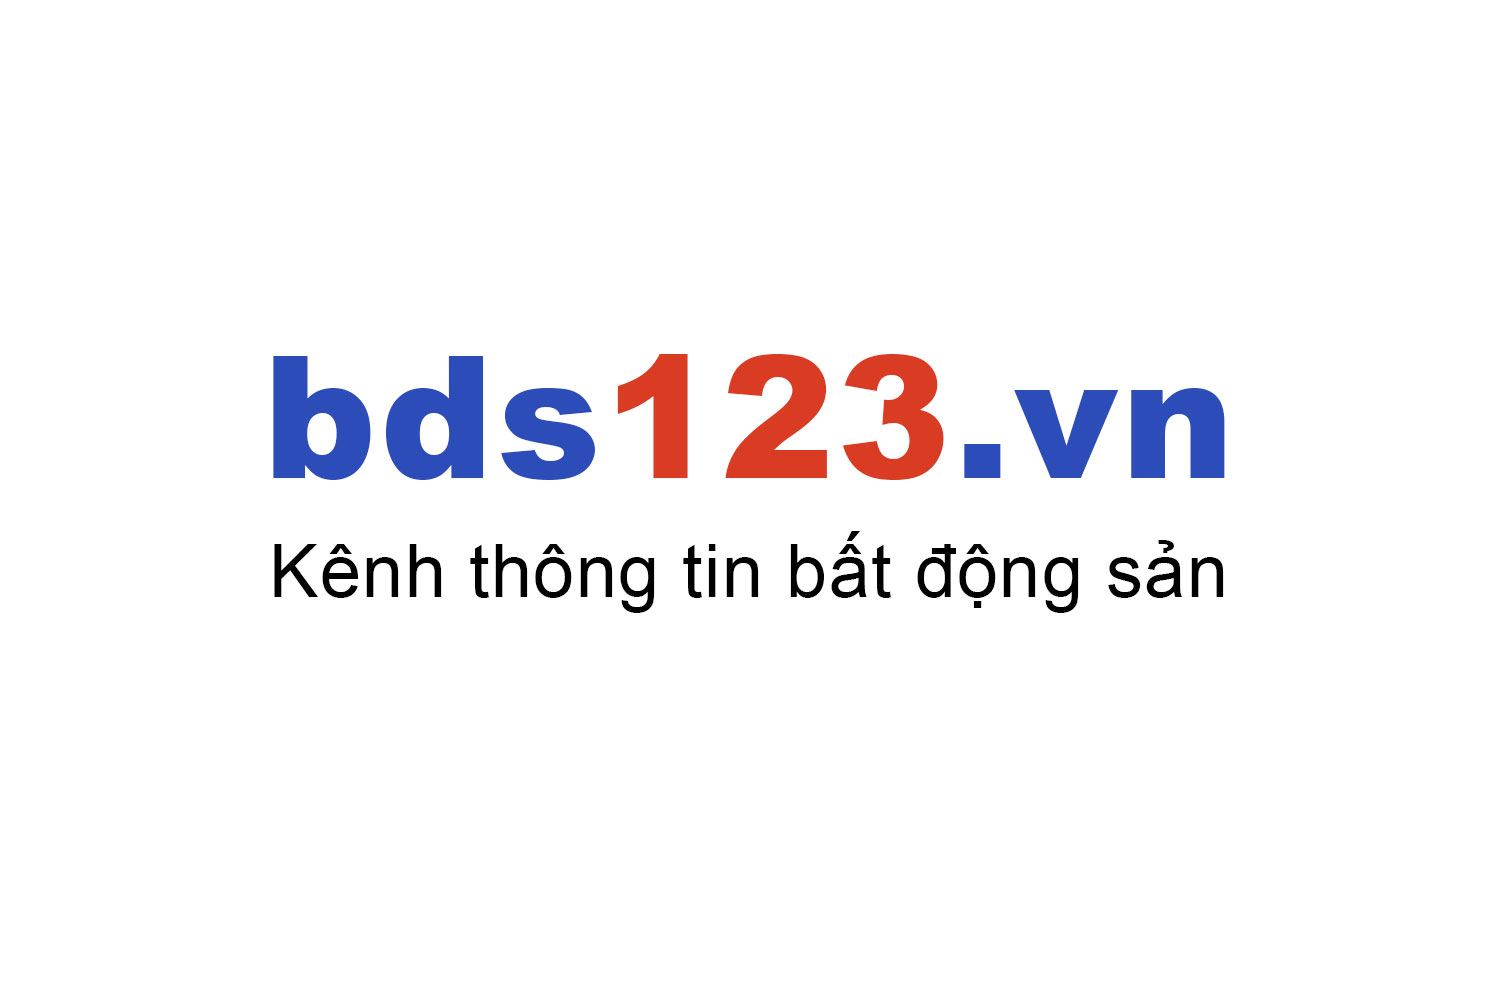 Mua bán căn hộ Central Plaza - 91 Phạm Văn Hai ưu đãi giá tốt T10/2022 - Bds123.vn